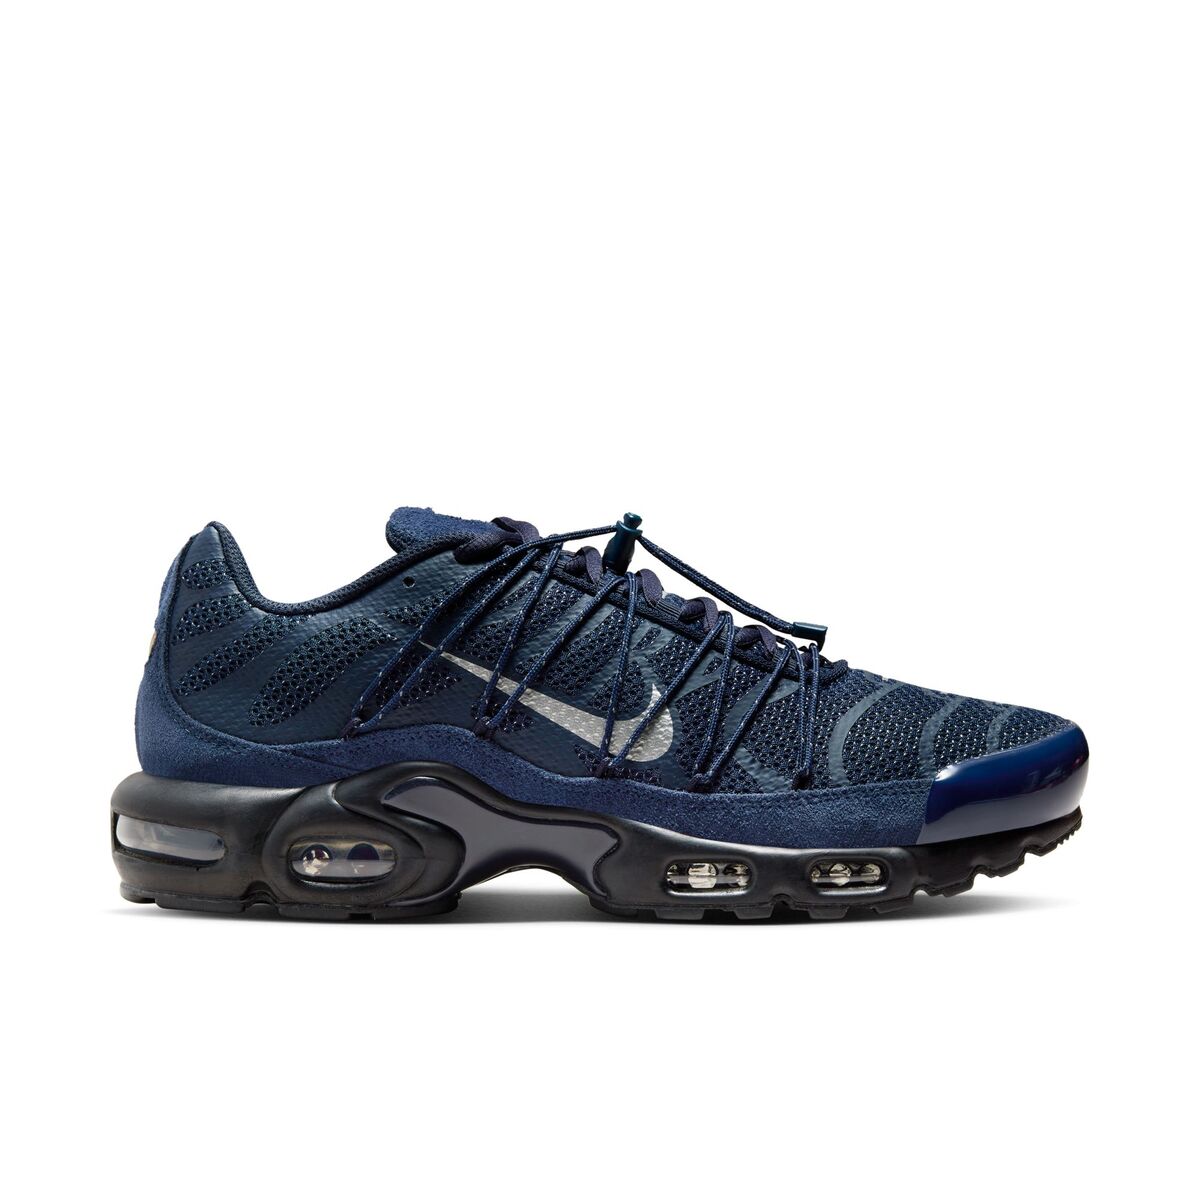 Buy Nike Air Max Plus Utility - Men's Shoes online | Foot Locker UAE